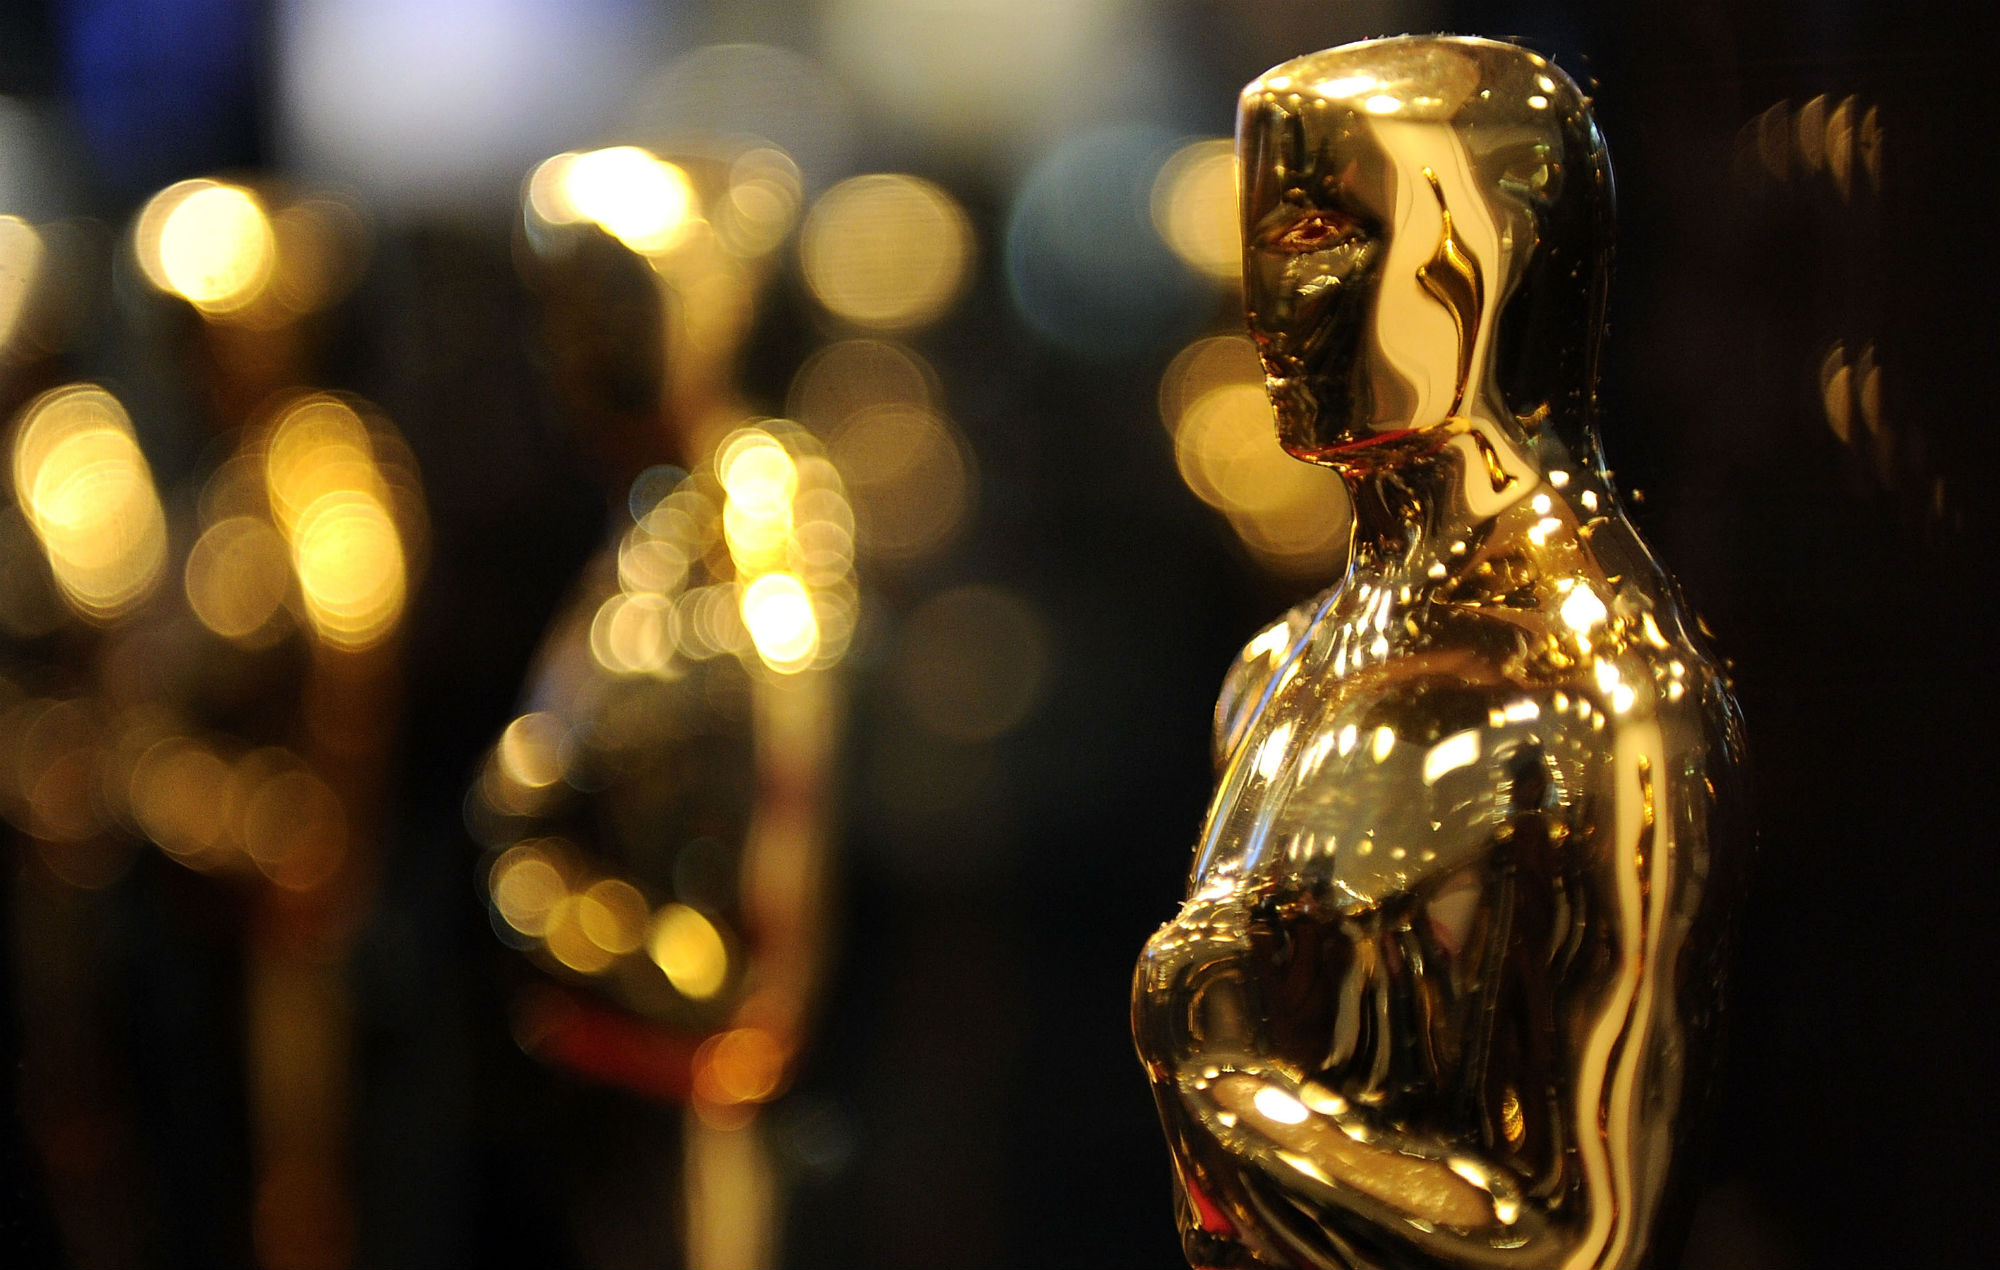 Los Oscar 2022 introducen la categoría de película "favorita de los fans" votada por los usuarios de Twitter